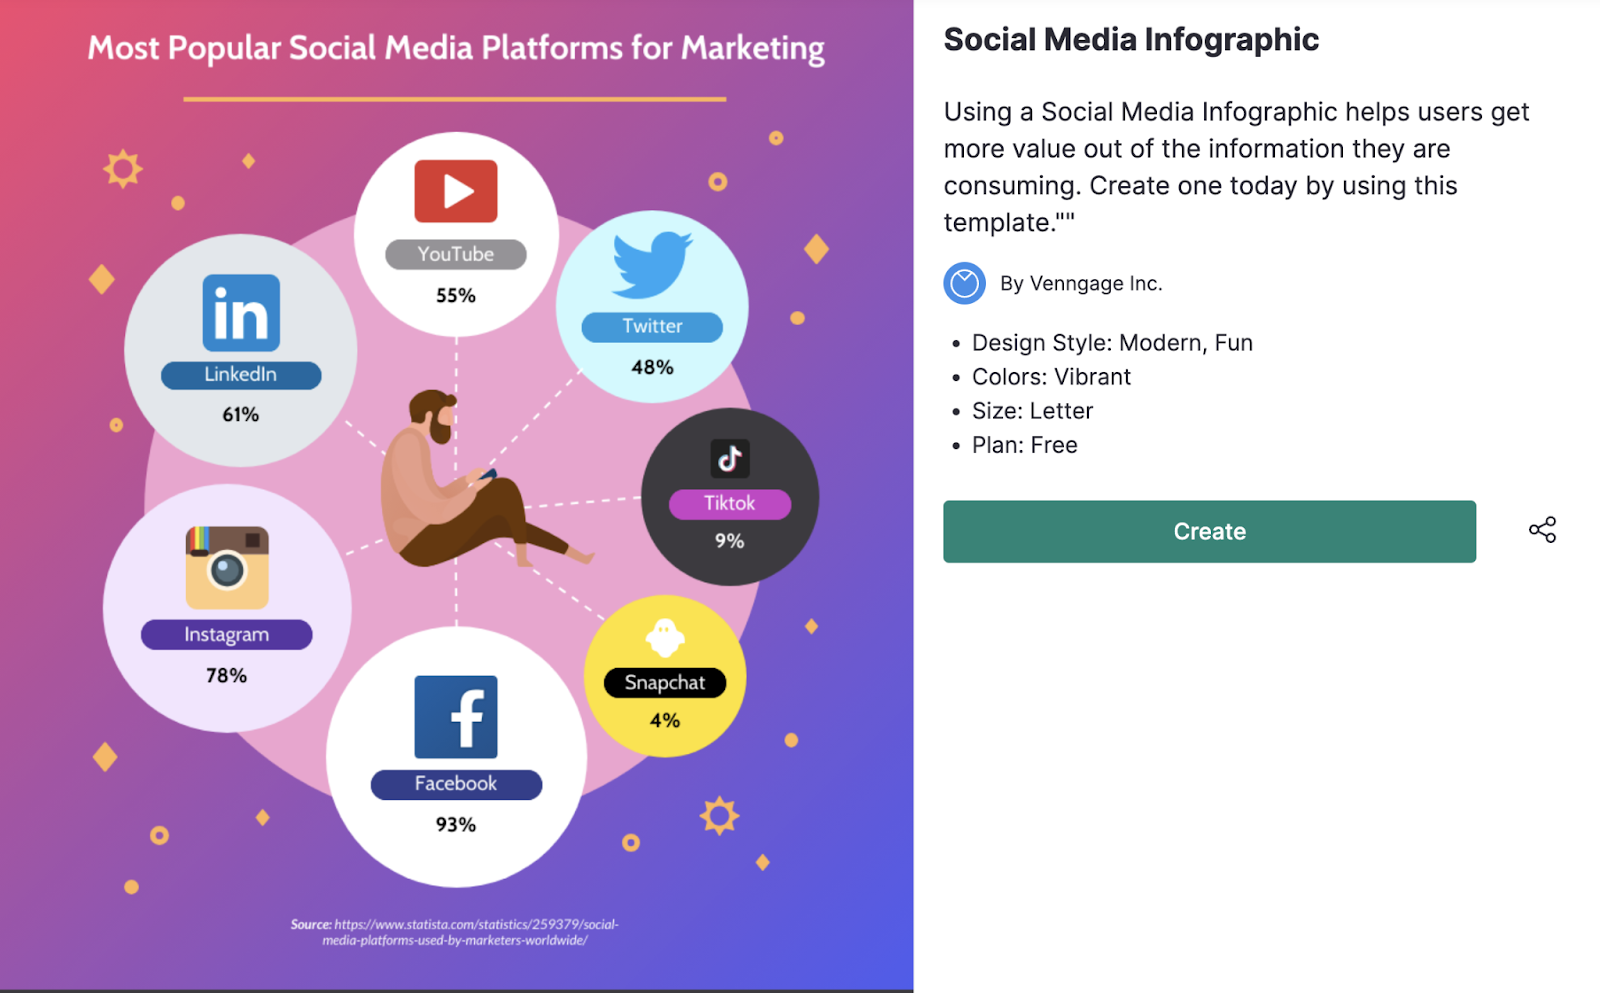 Venngage创建的社交媒体信息图表，展示了最受欢迎的营销社交媒体平台。